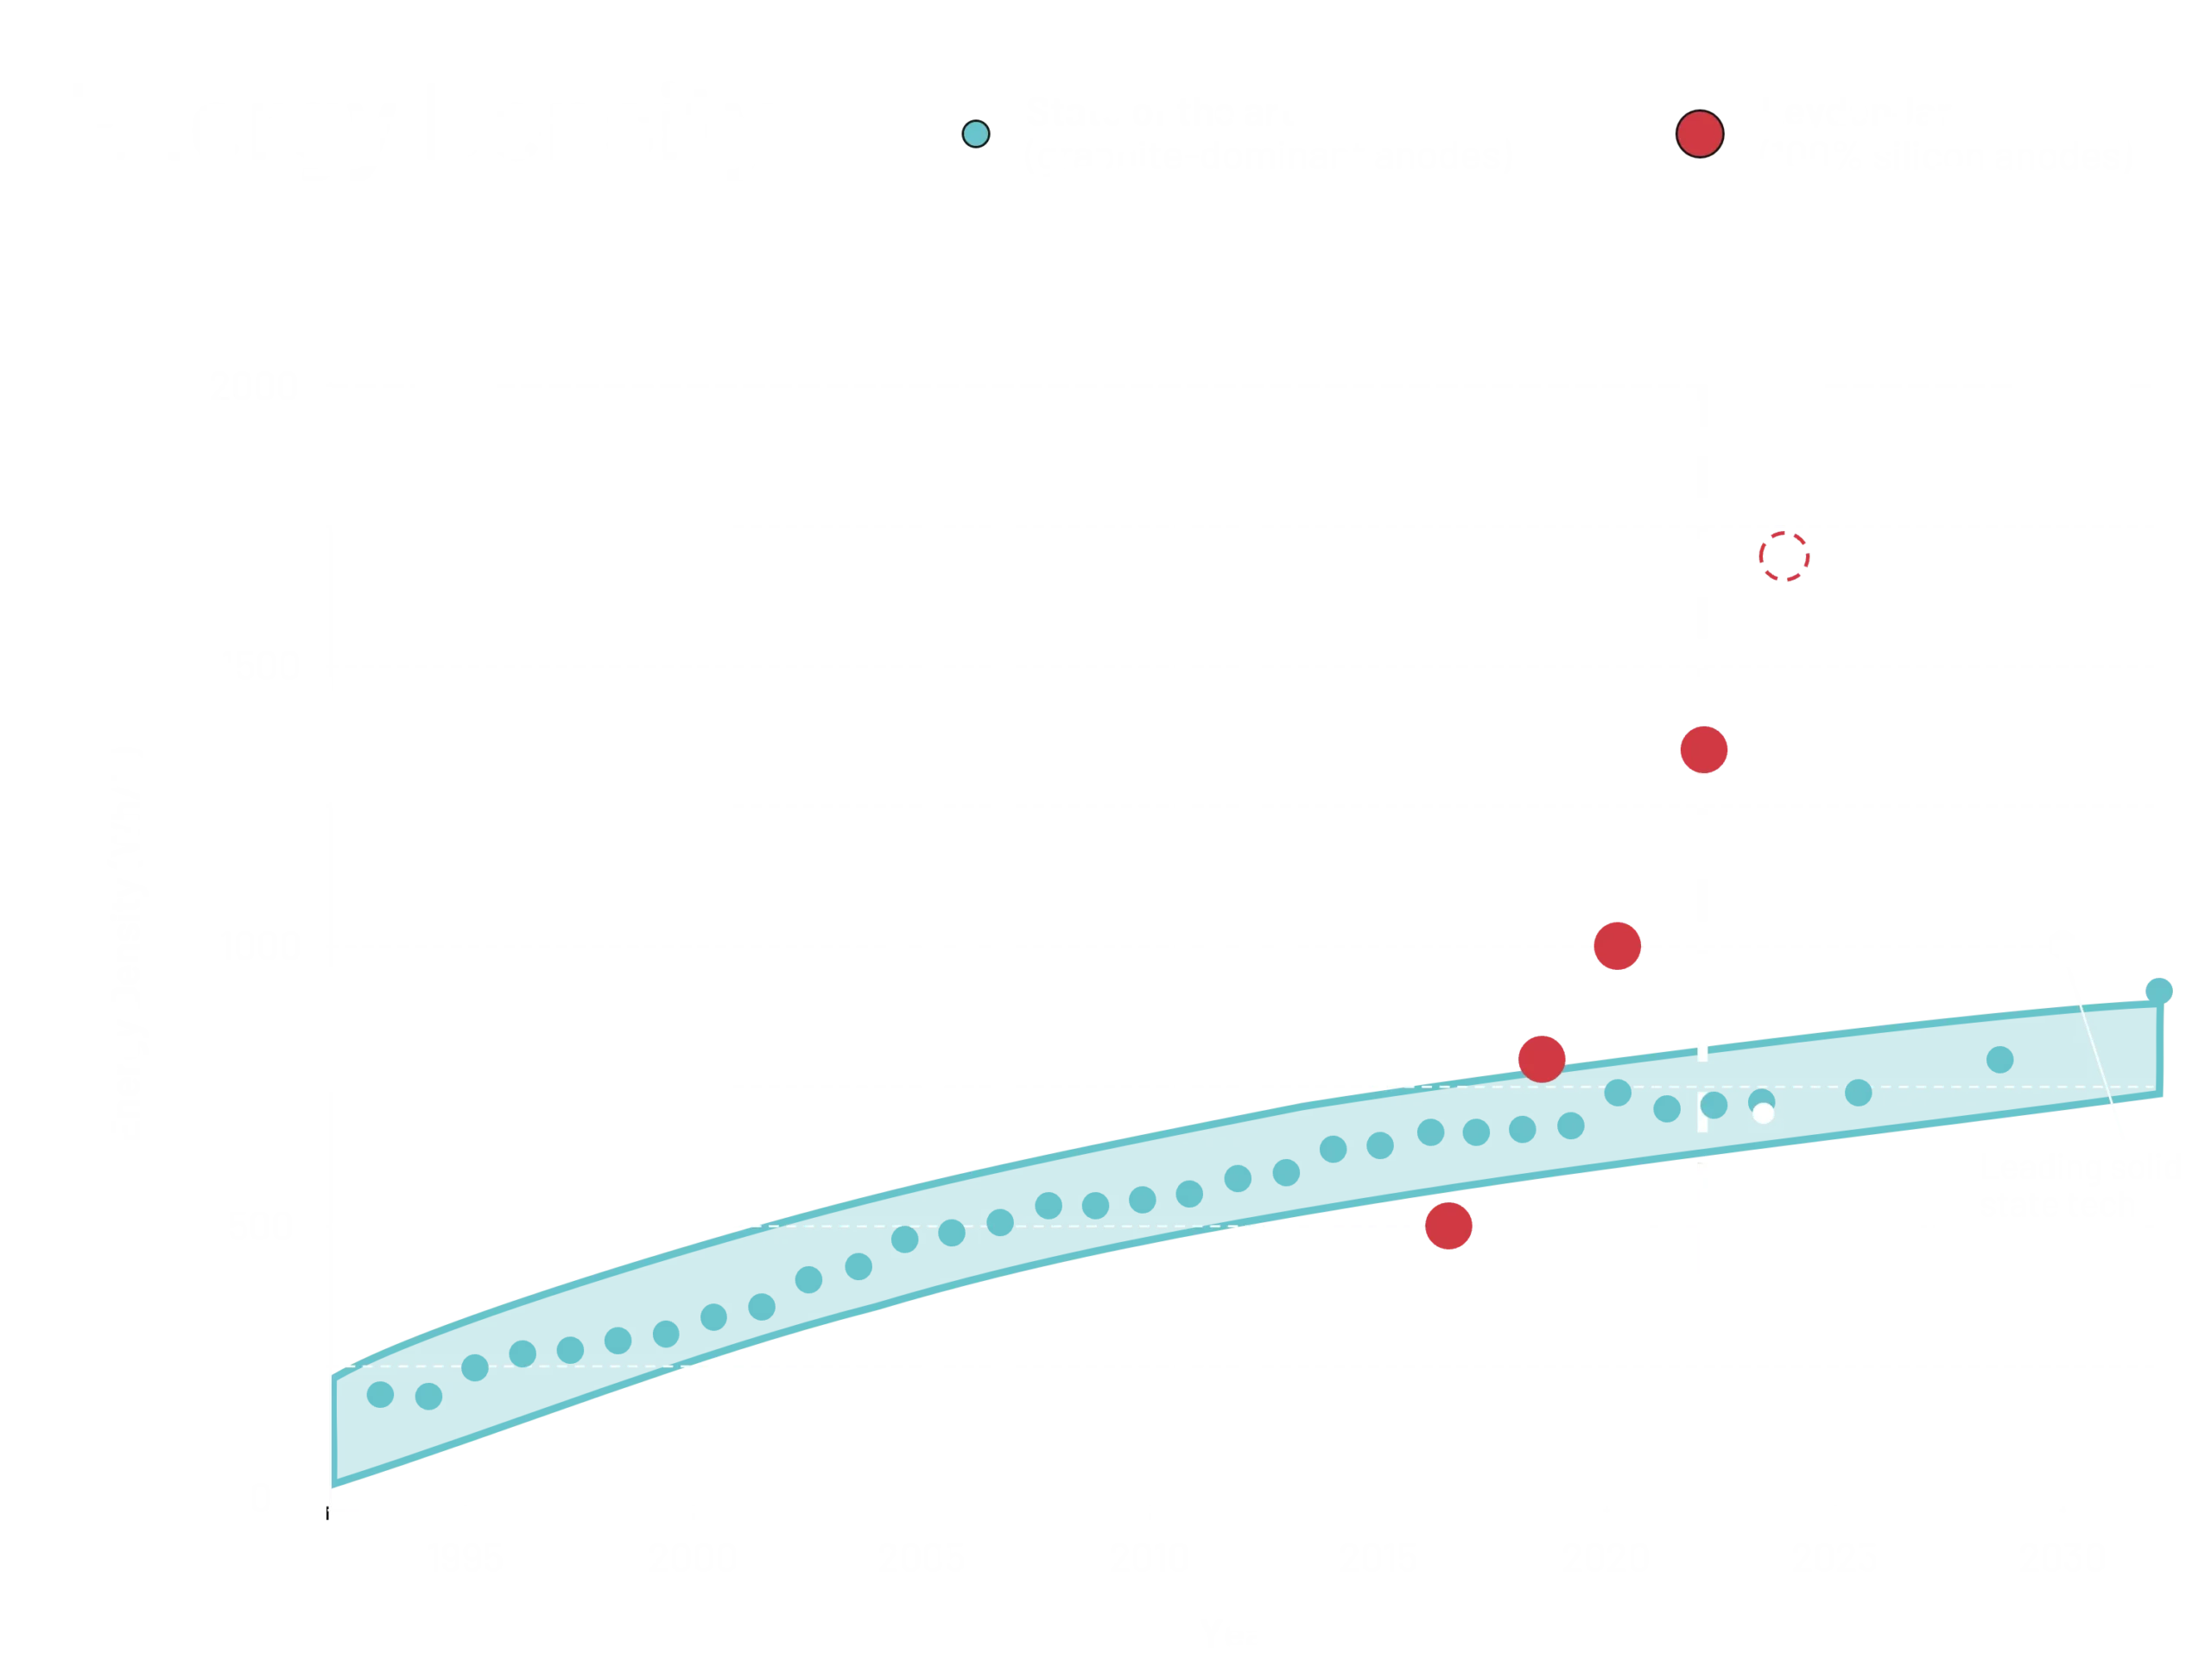 Energy graph